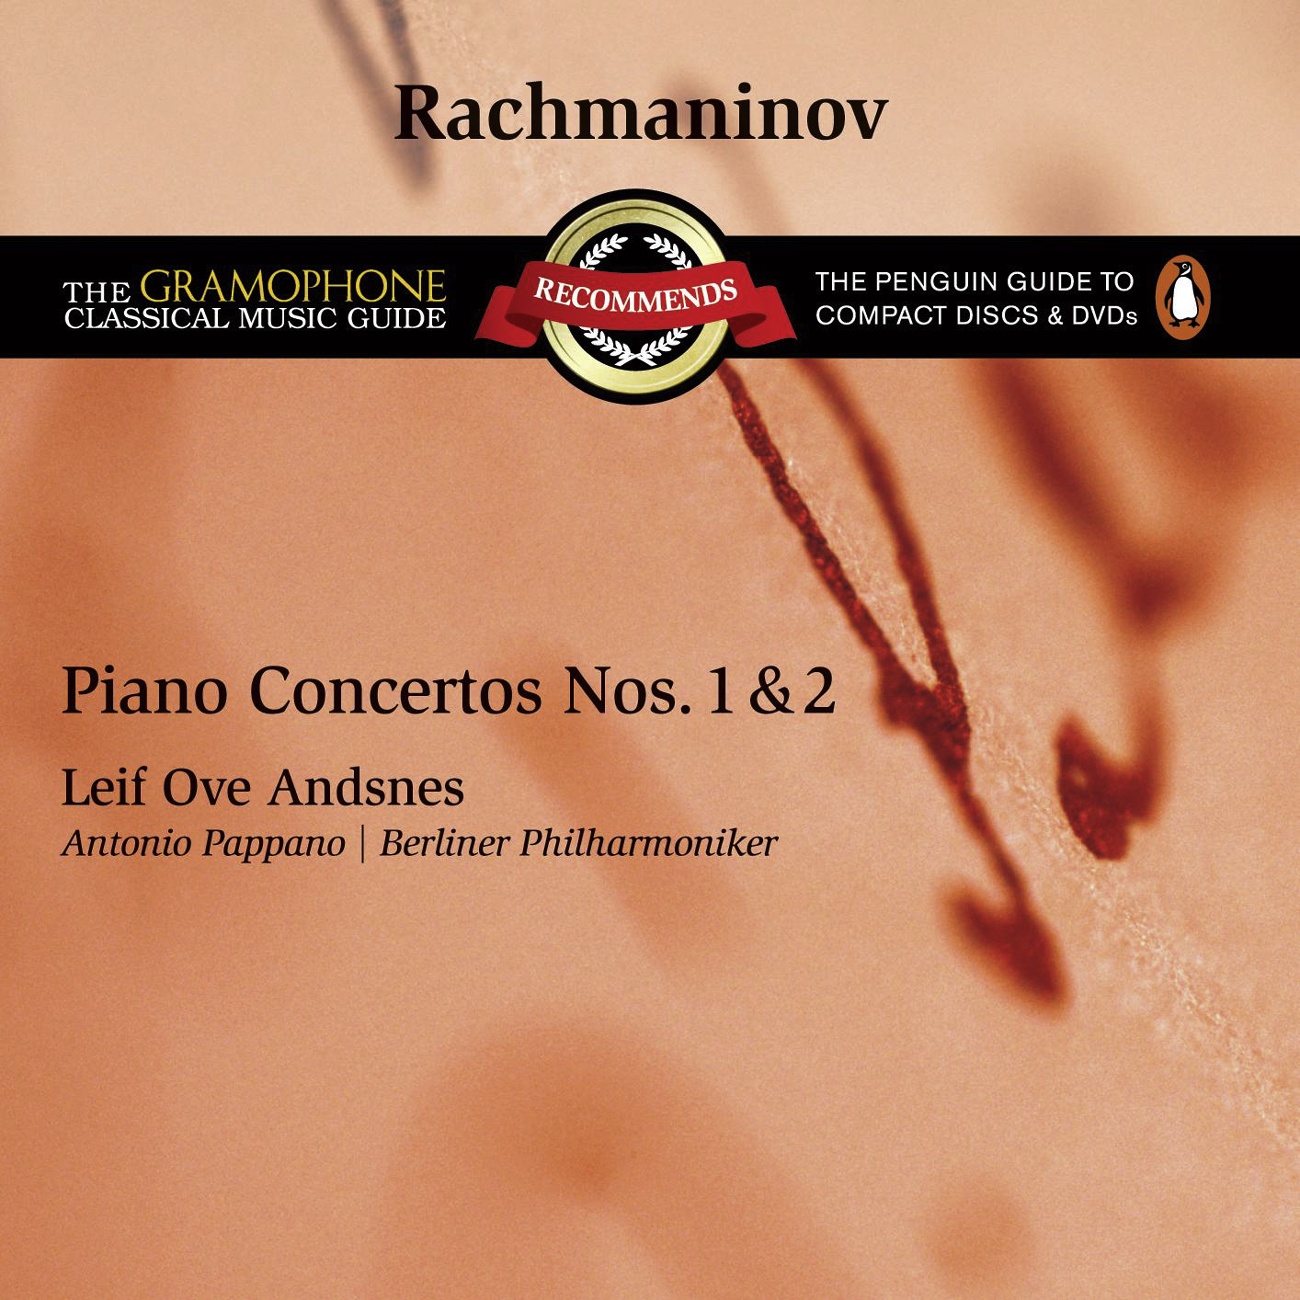 Piano Concerto No. 2 in C Minor, Op.18: I. Moderato